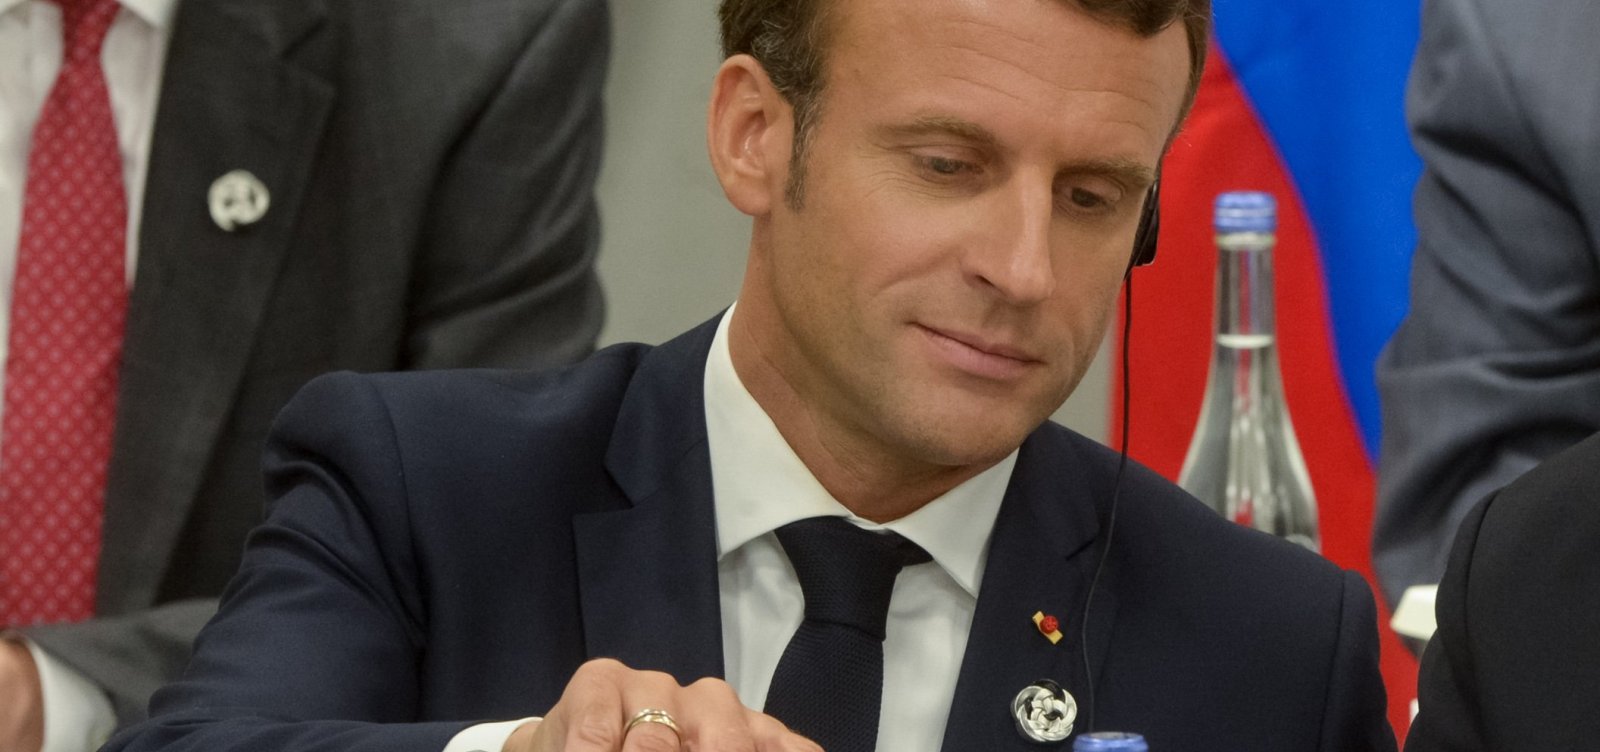 Presidente da França recebe carta com pedaço de dedo em sede do governo